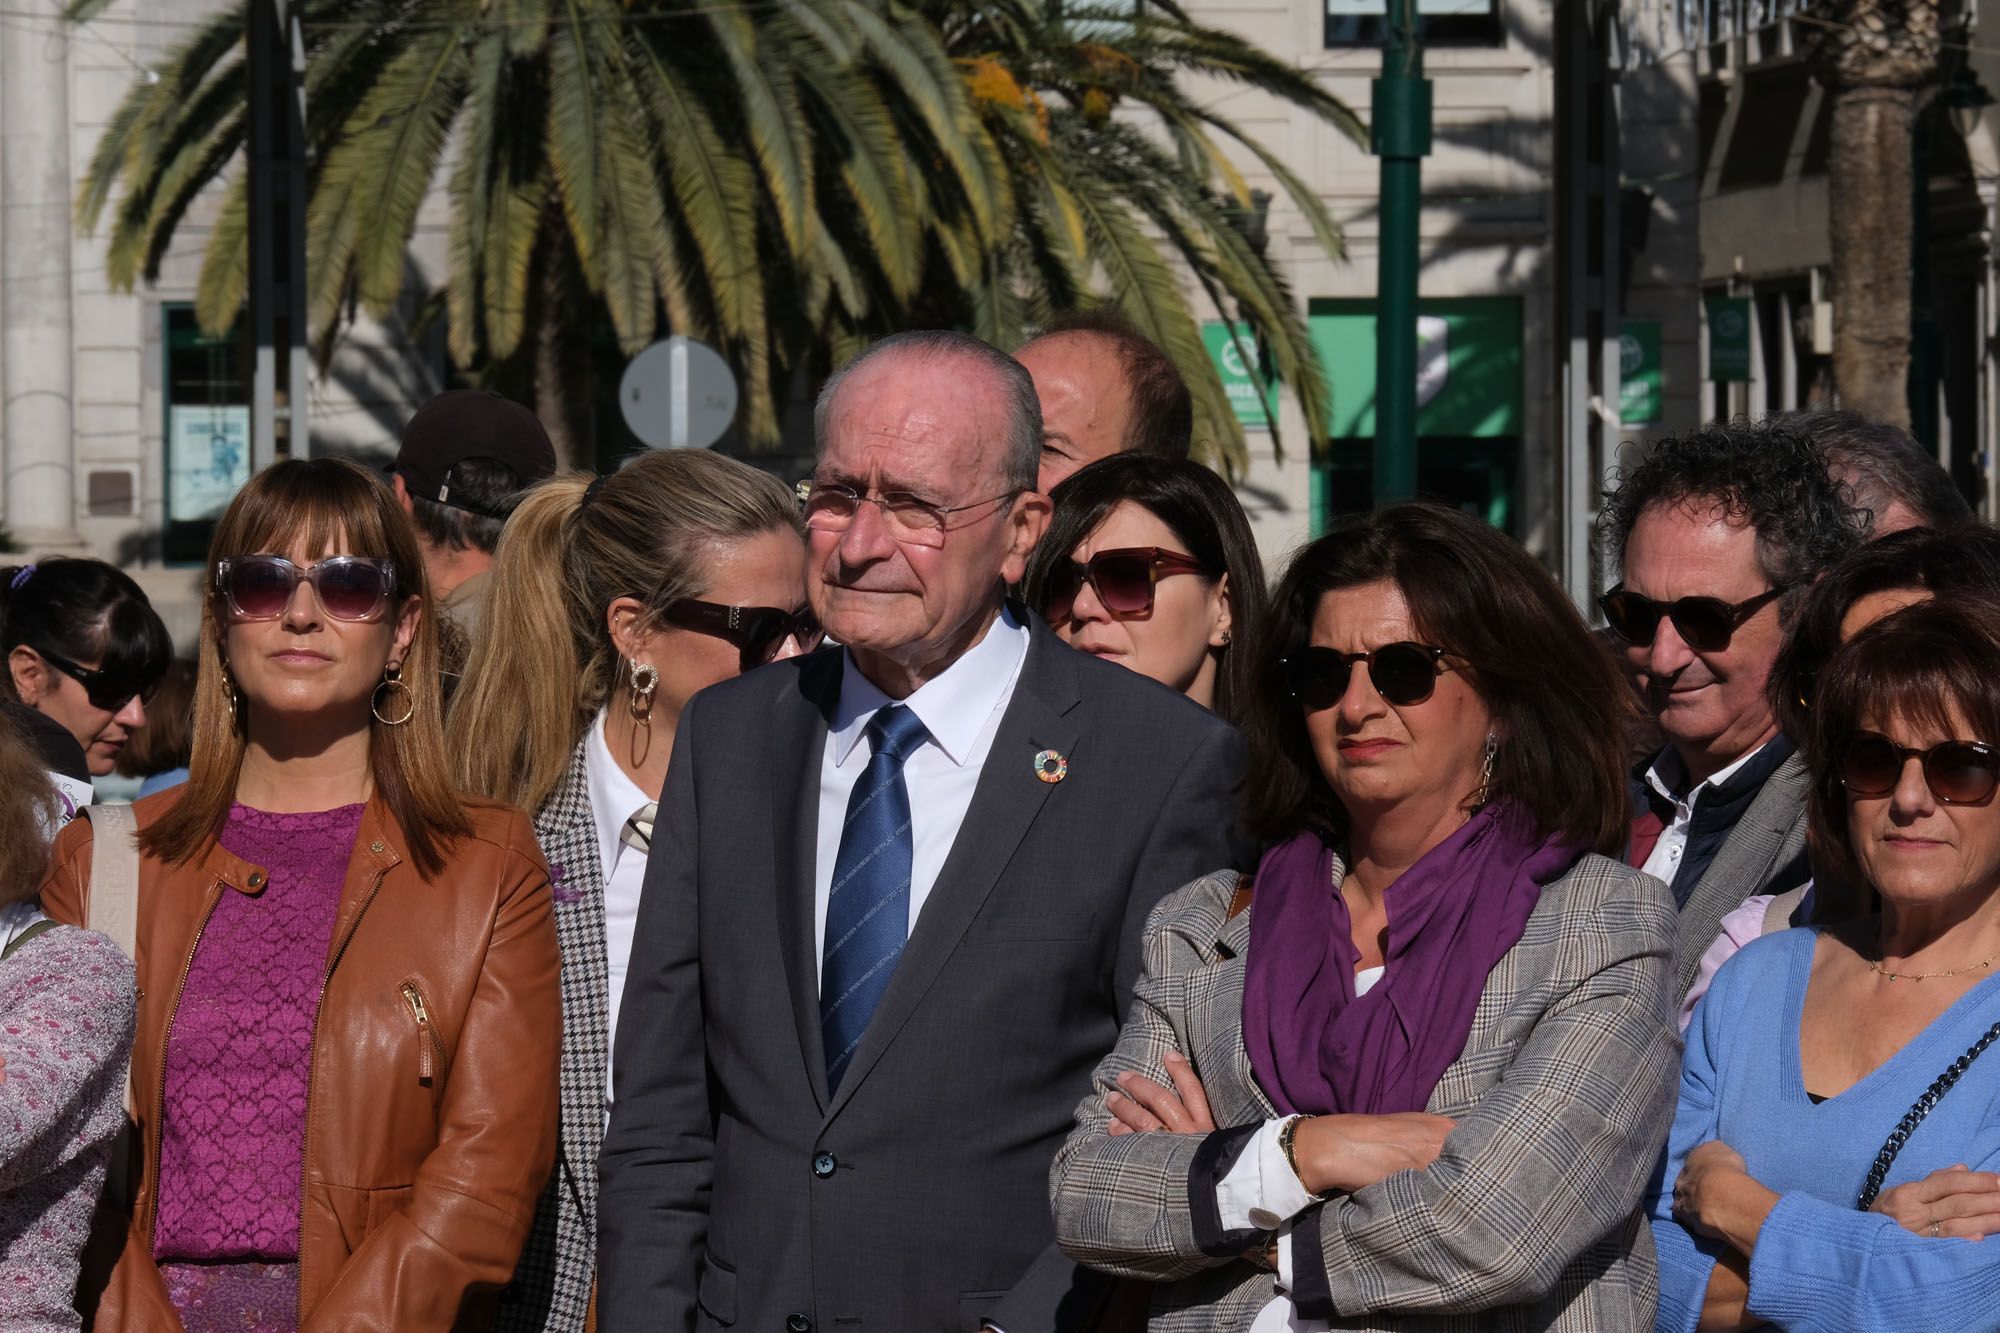 La marcha del 25-N en Málaga por el Día de la eliminación de la violencia machista contra las mujeres, en imágenes